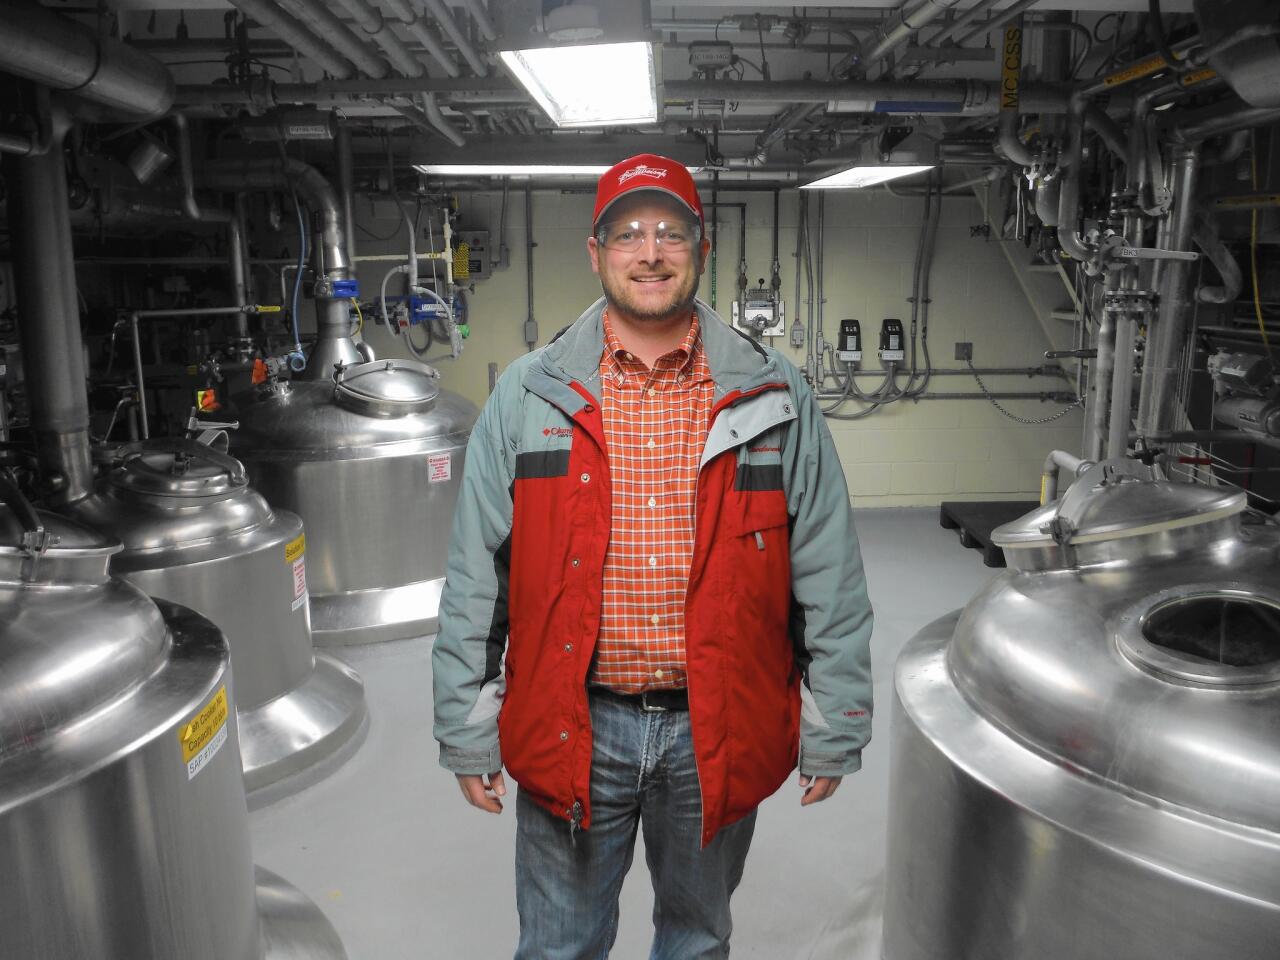 Anheuser-Busch Research Pilot Brewery